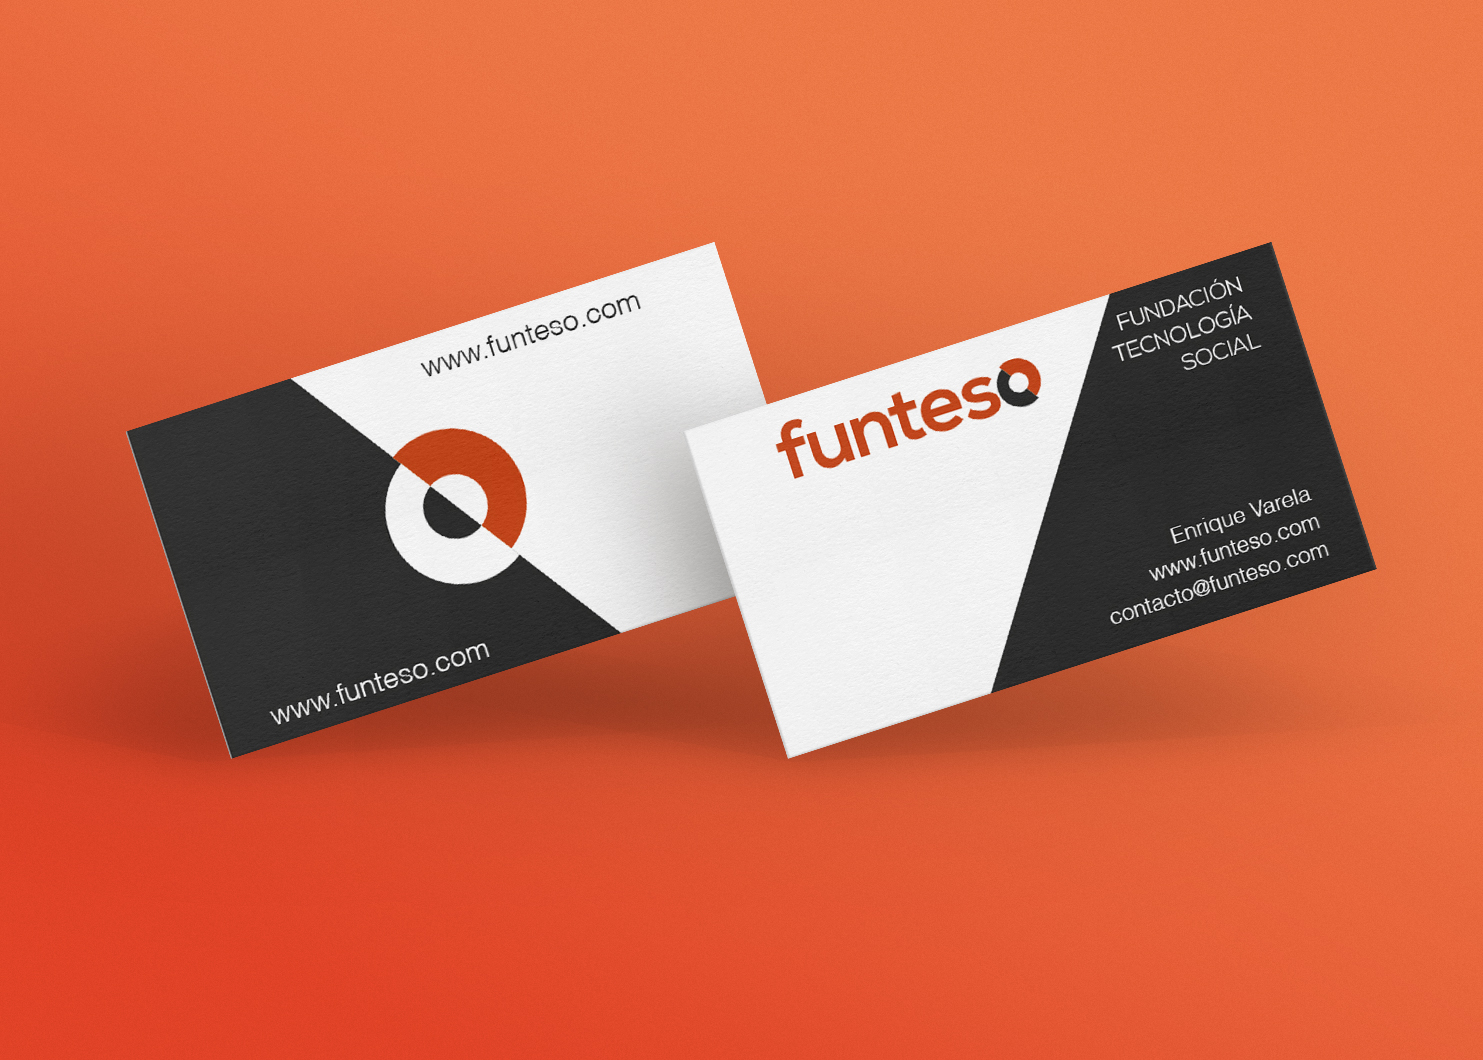 imagen que muestra las tarjetas corporativas con la identidad de Funteso 